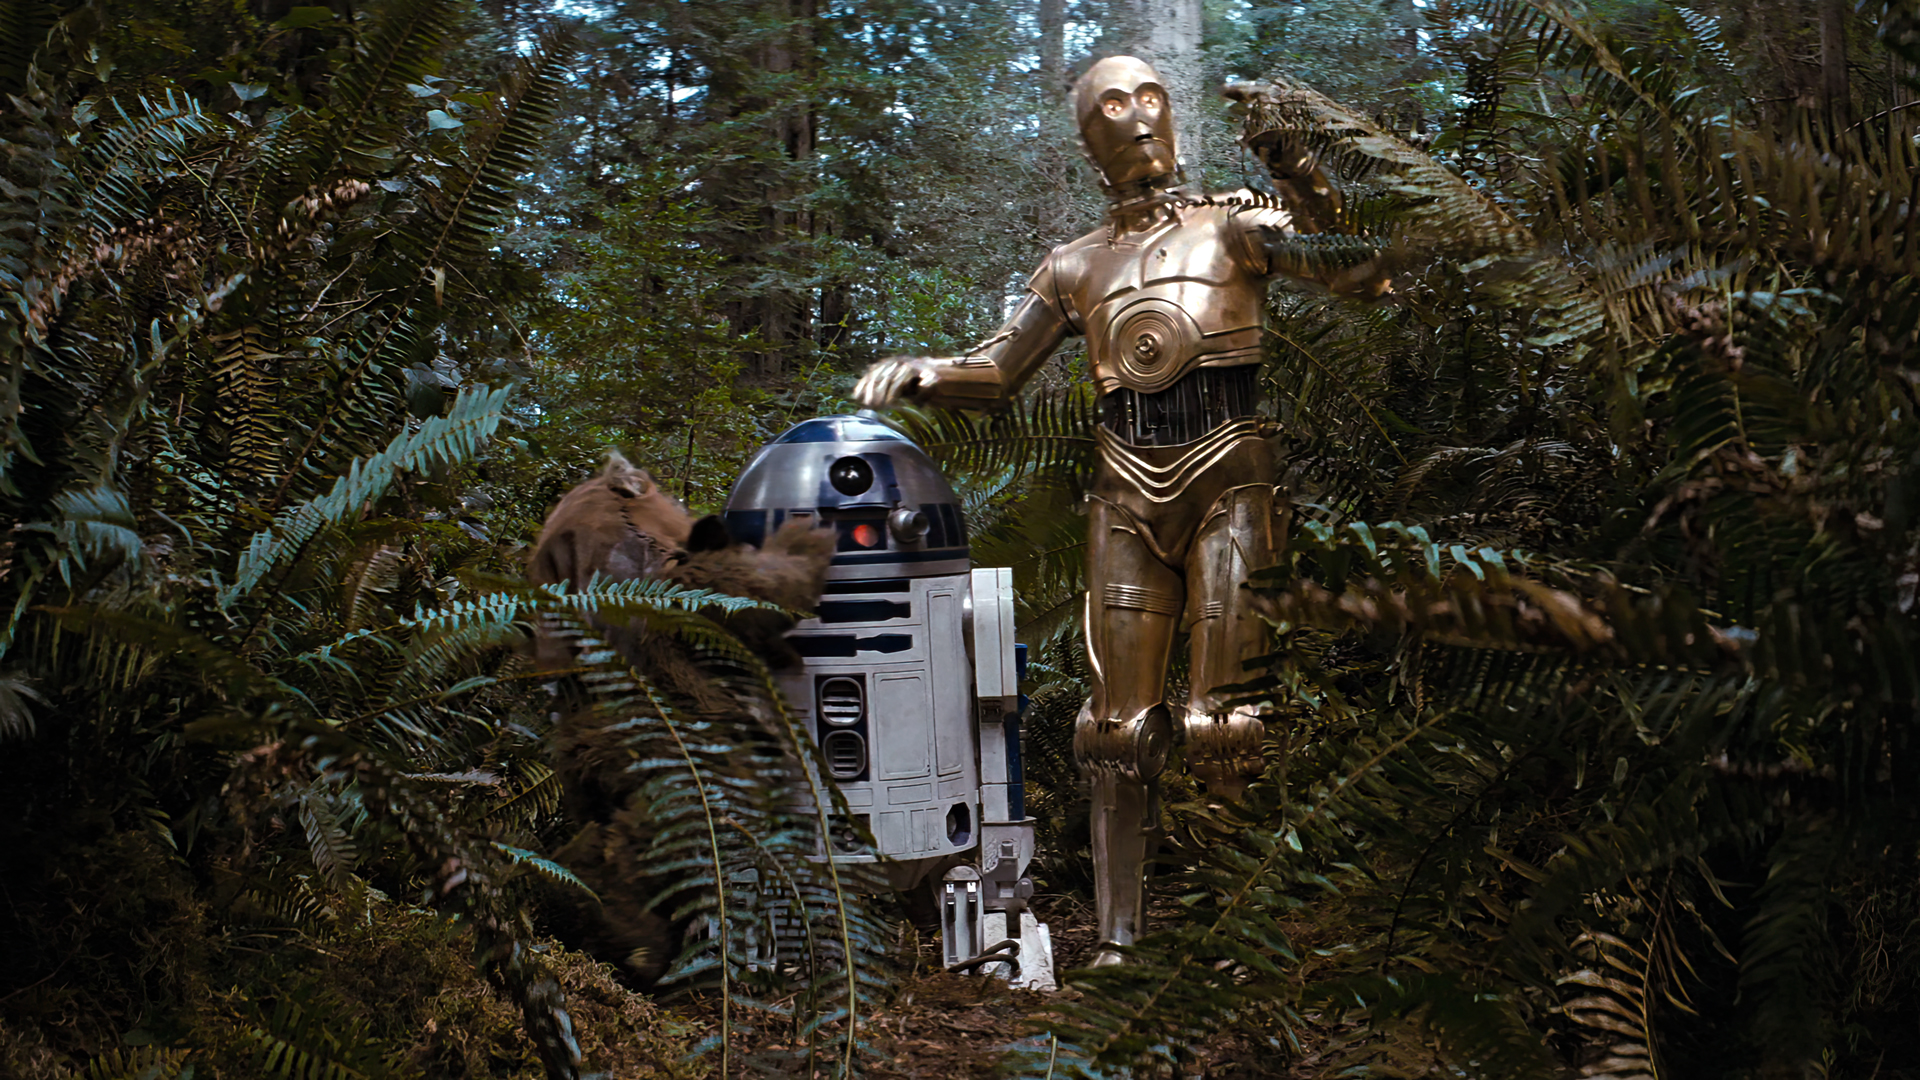 Star Wars Episode Vi The Return Of The Jedi Movies Film Stills Star Wars C 3PO R2 D2 Robot Ewok Plan 1920x1080